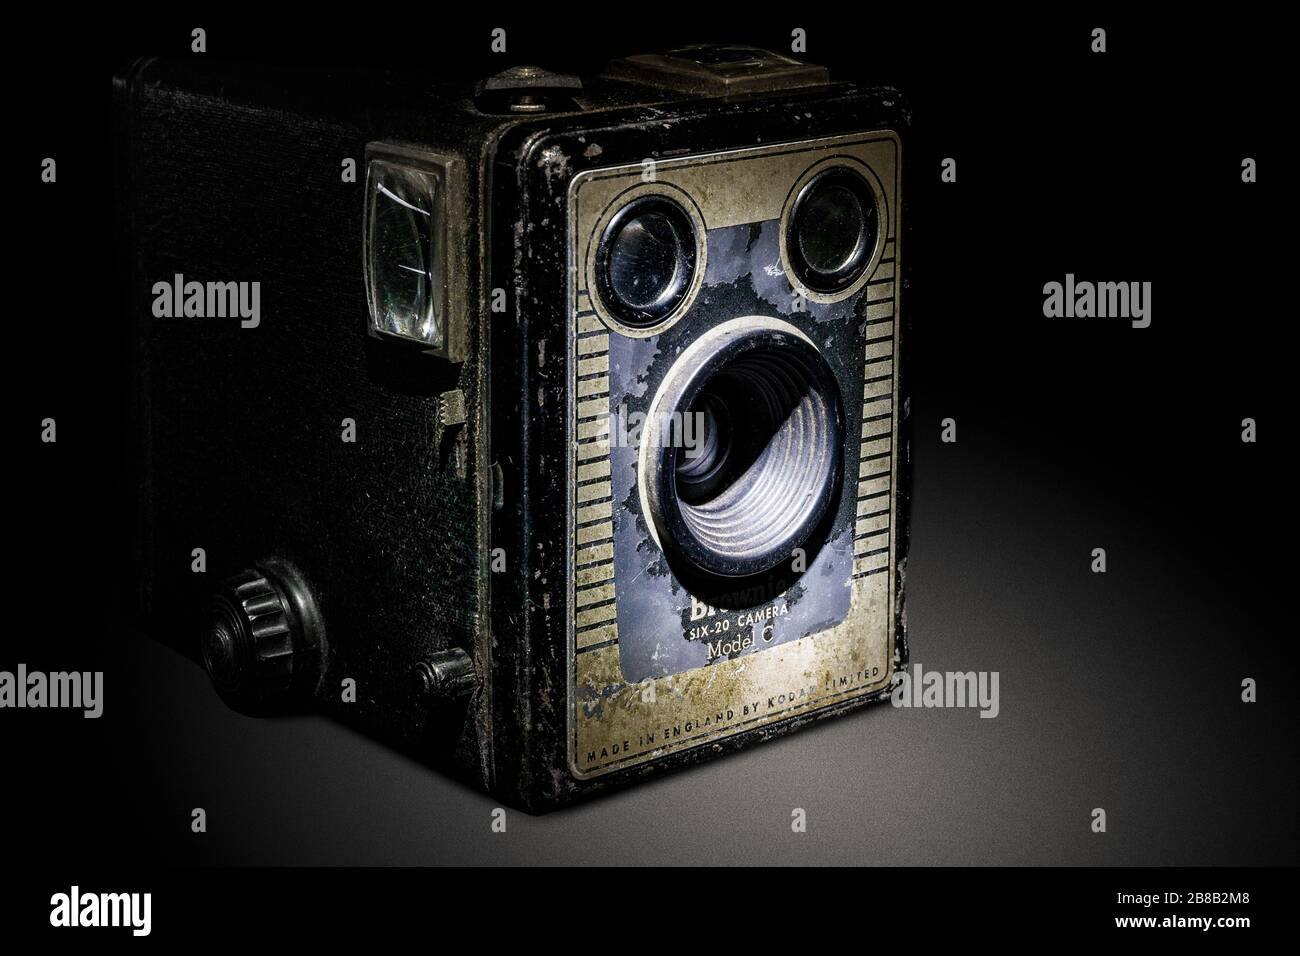 Image studio d'un appareil photo Brownie Box Banque D'Images